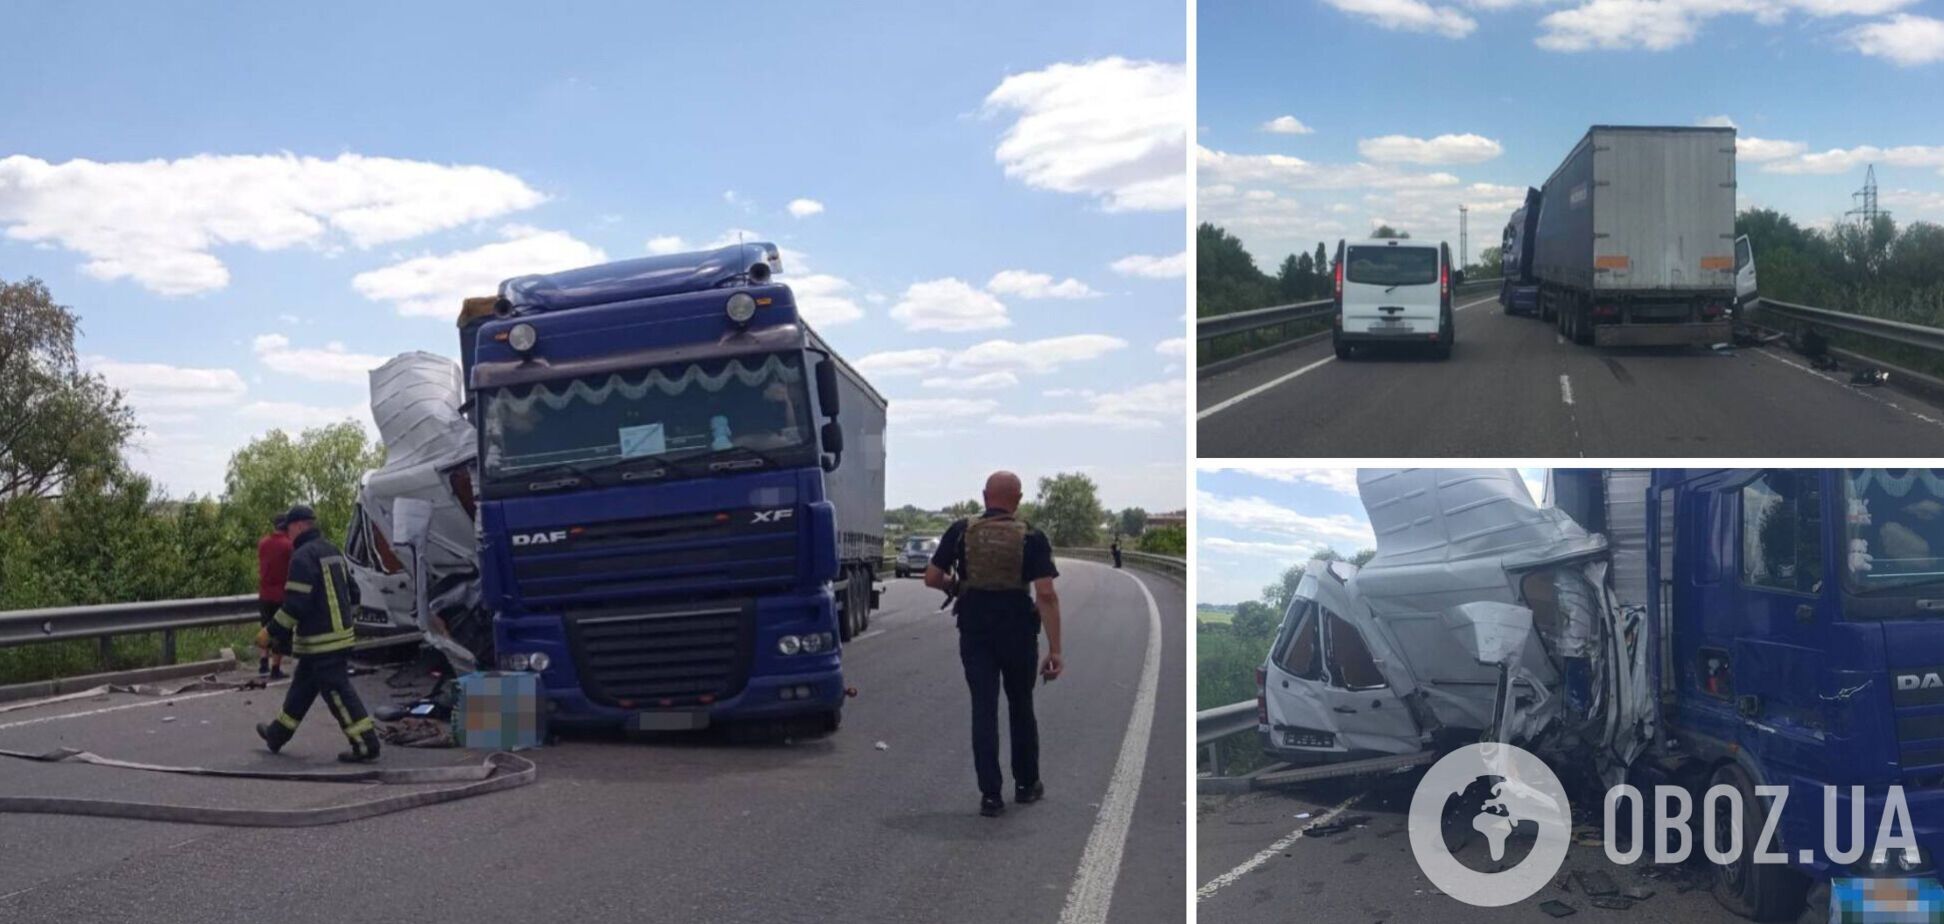 Авария произошла вблизи Киева